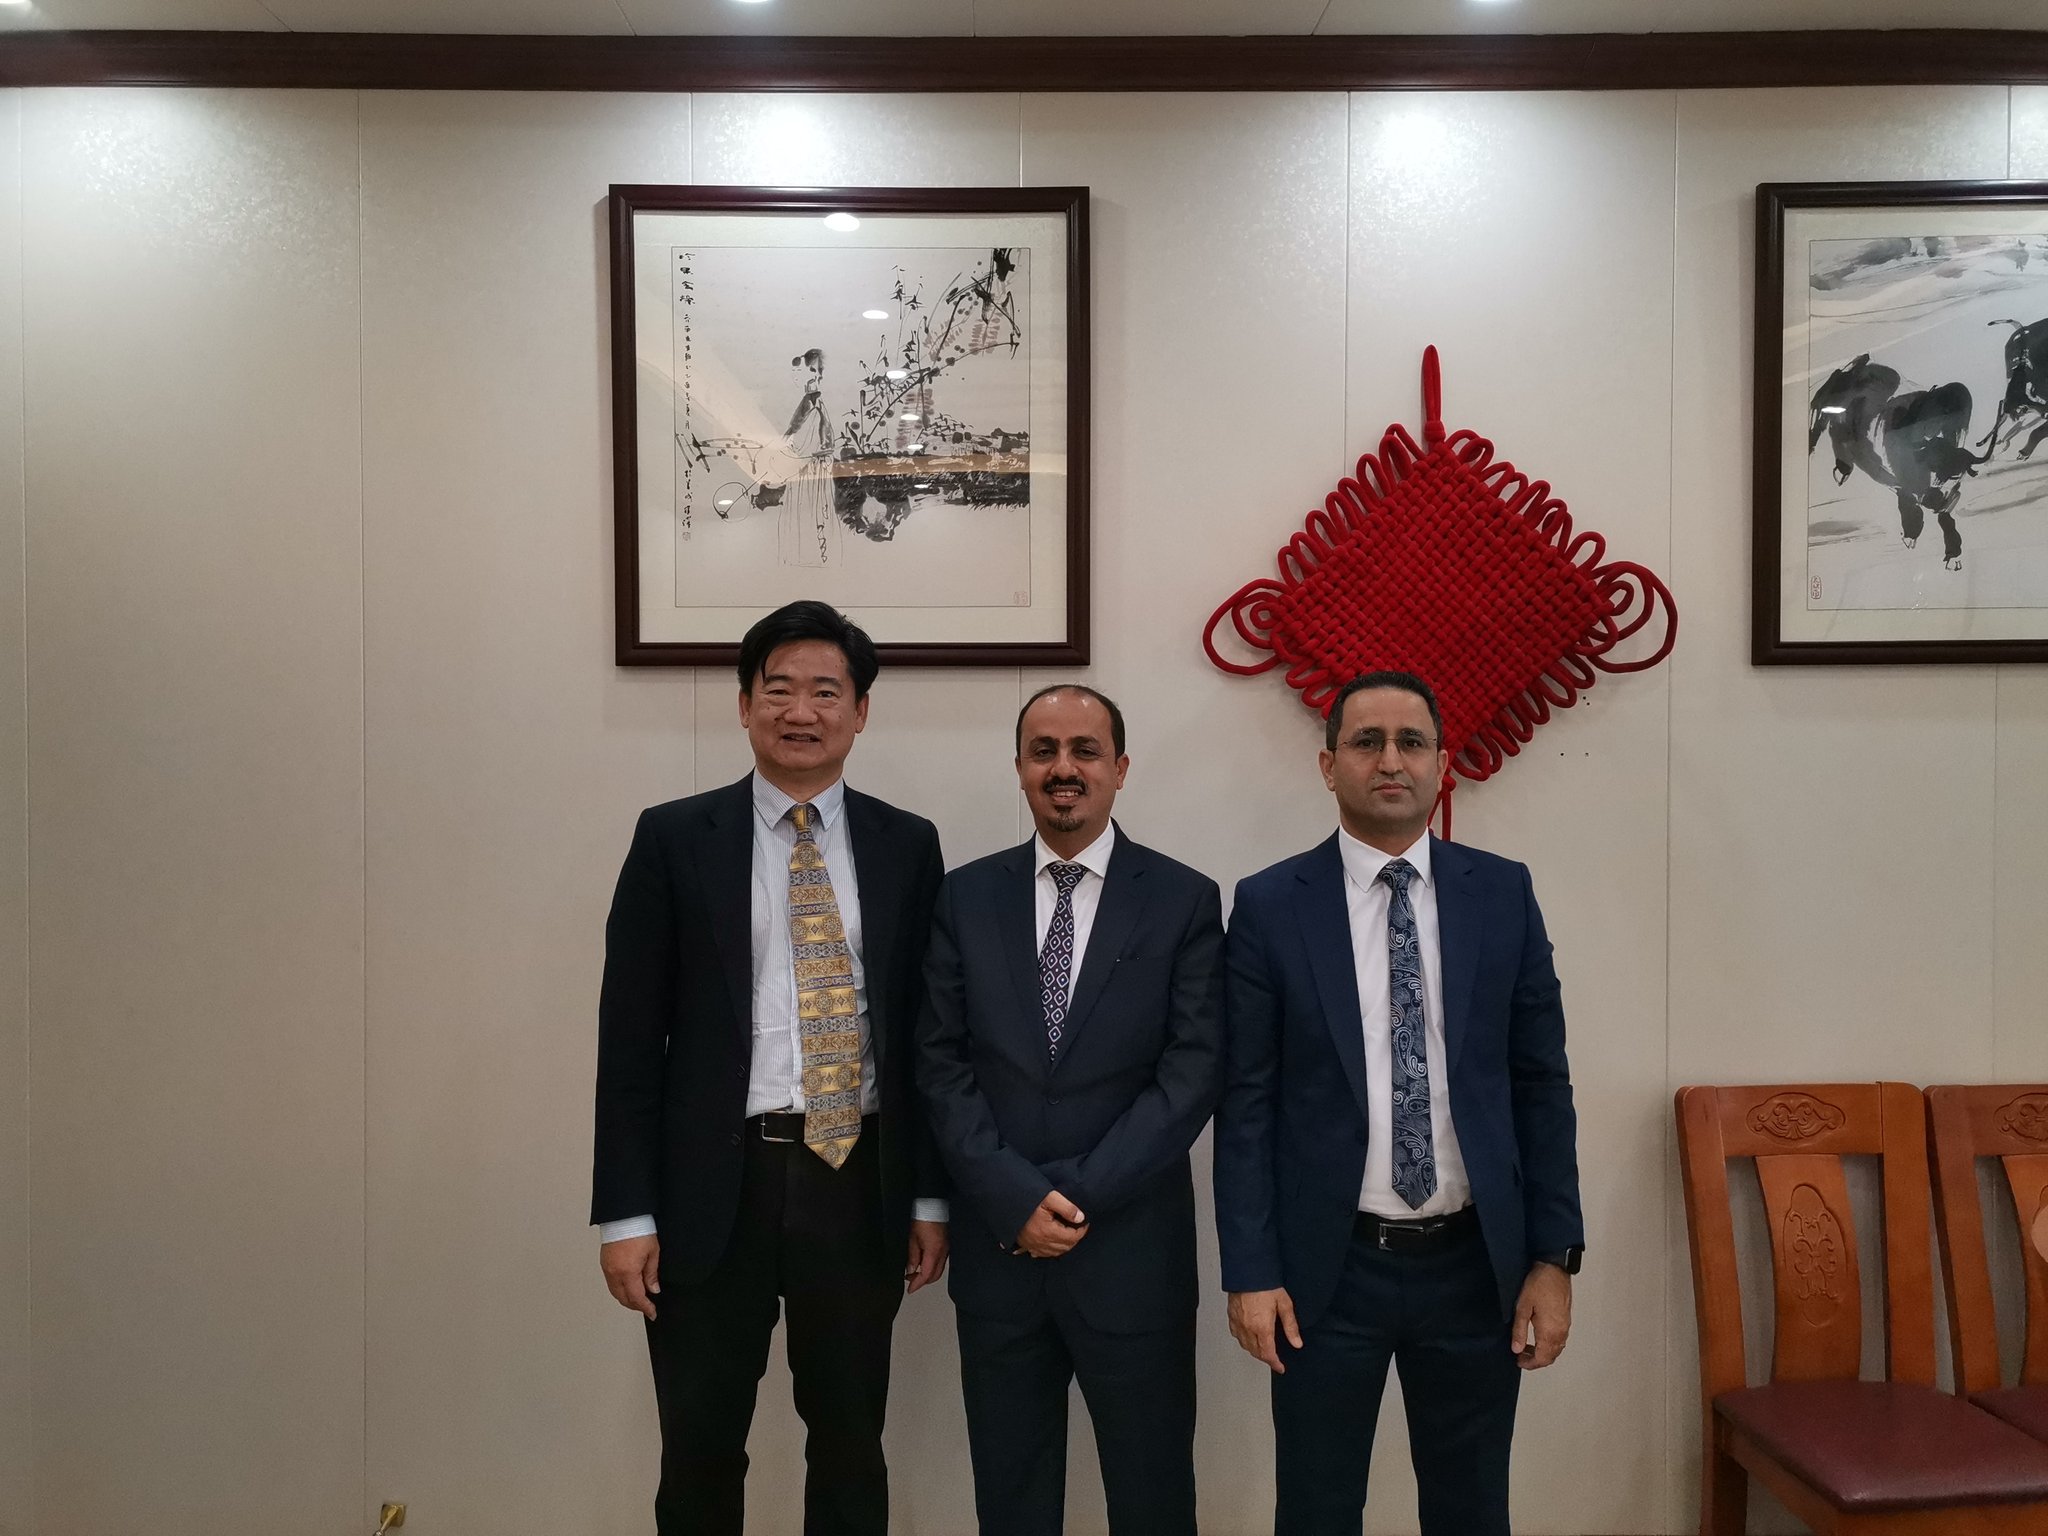 الوزير الإرياني يلتقي سعادة القائم بأعمال السفارة الصينية لدى اليمن لهذا السبب